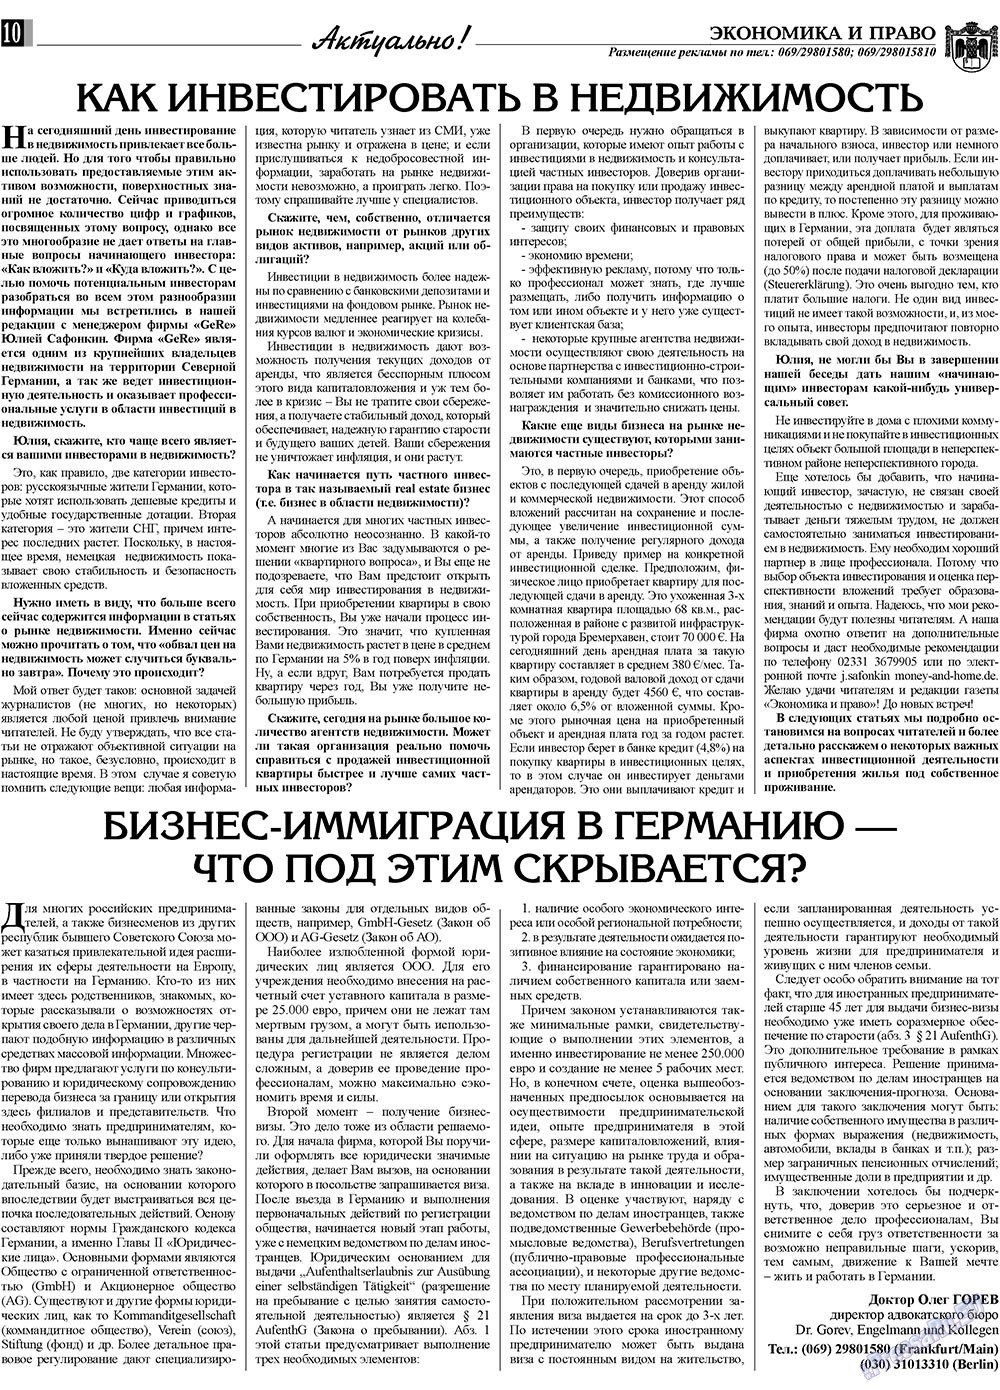 Экономика и право, газета. 2009 №10 стр.10